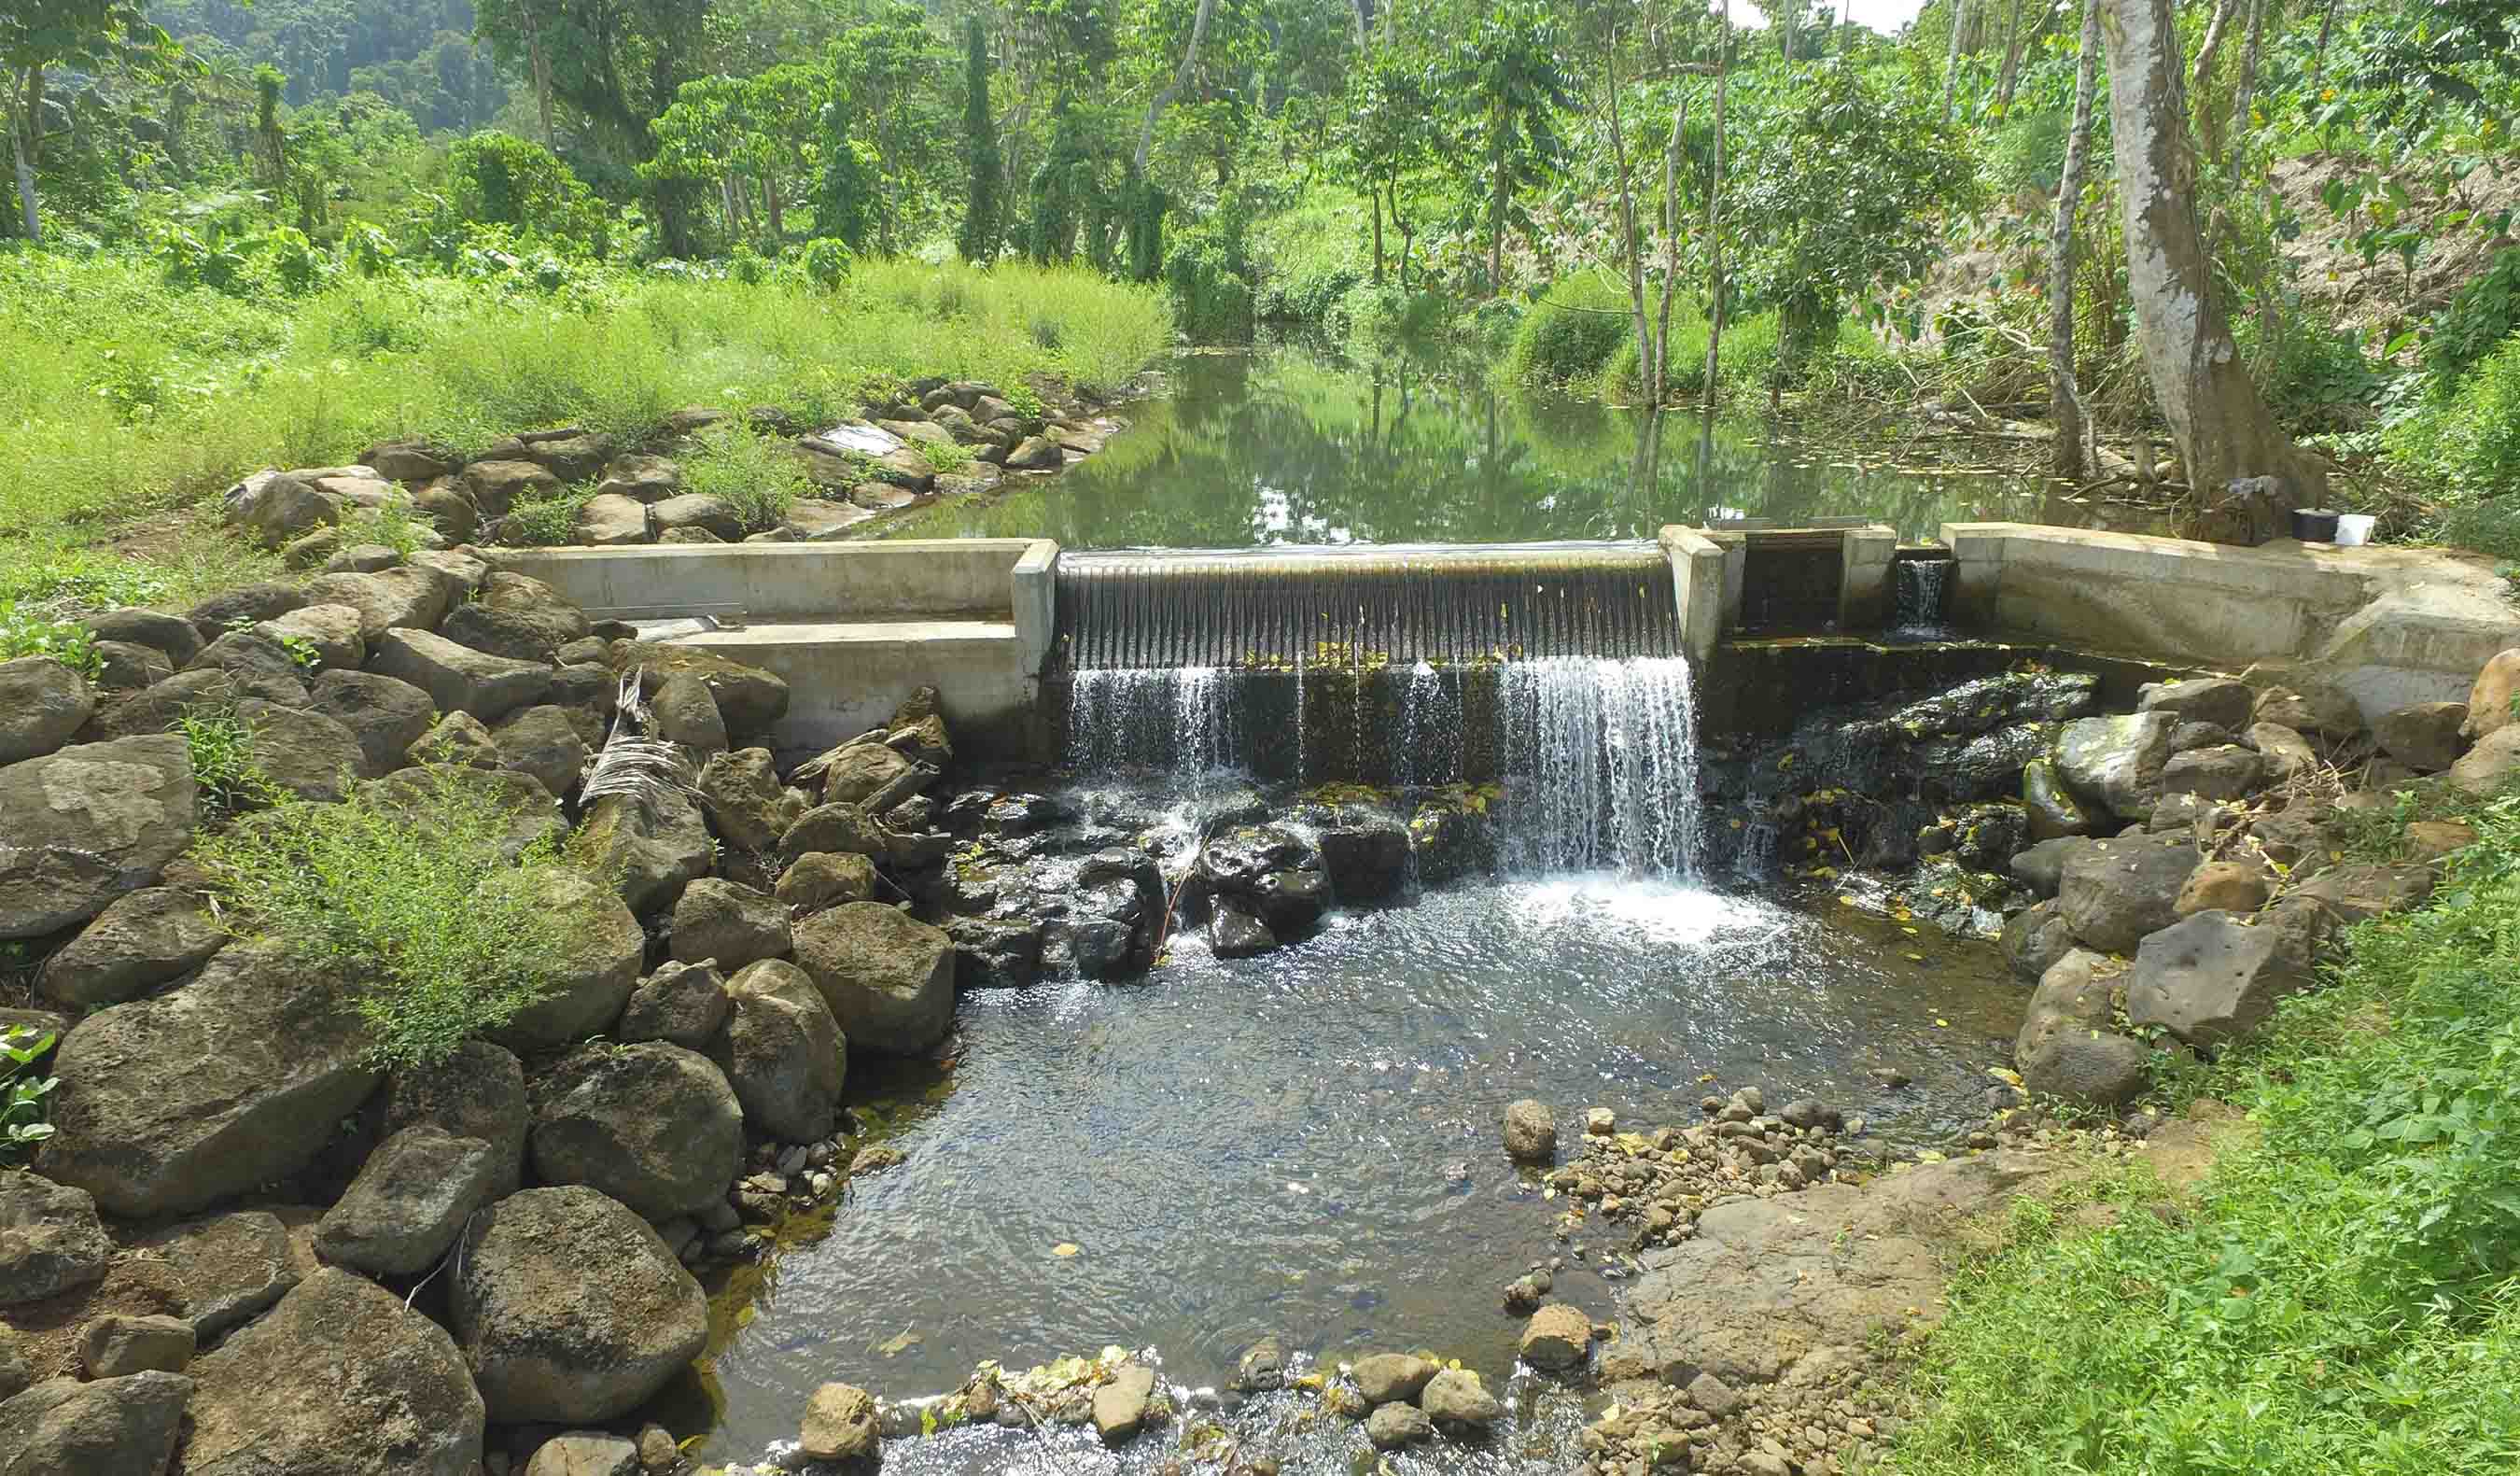 Tafitoala-Fausaga Hydropower Project